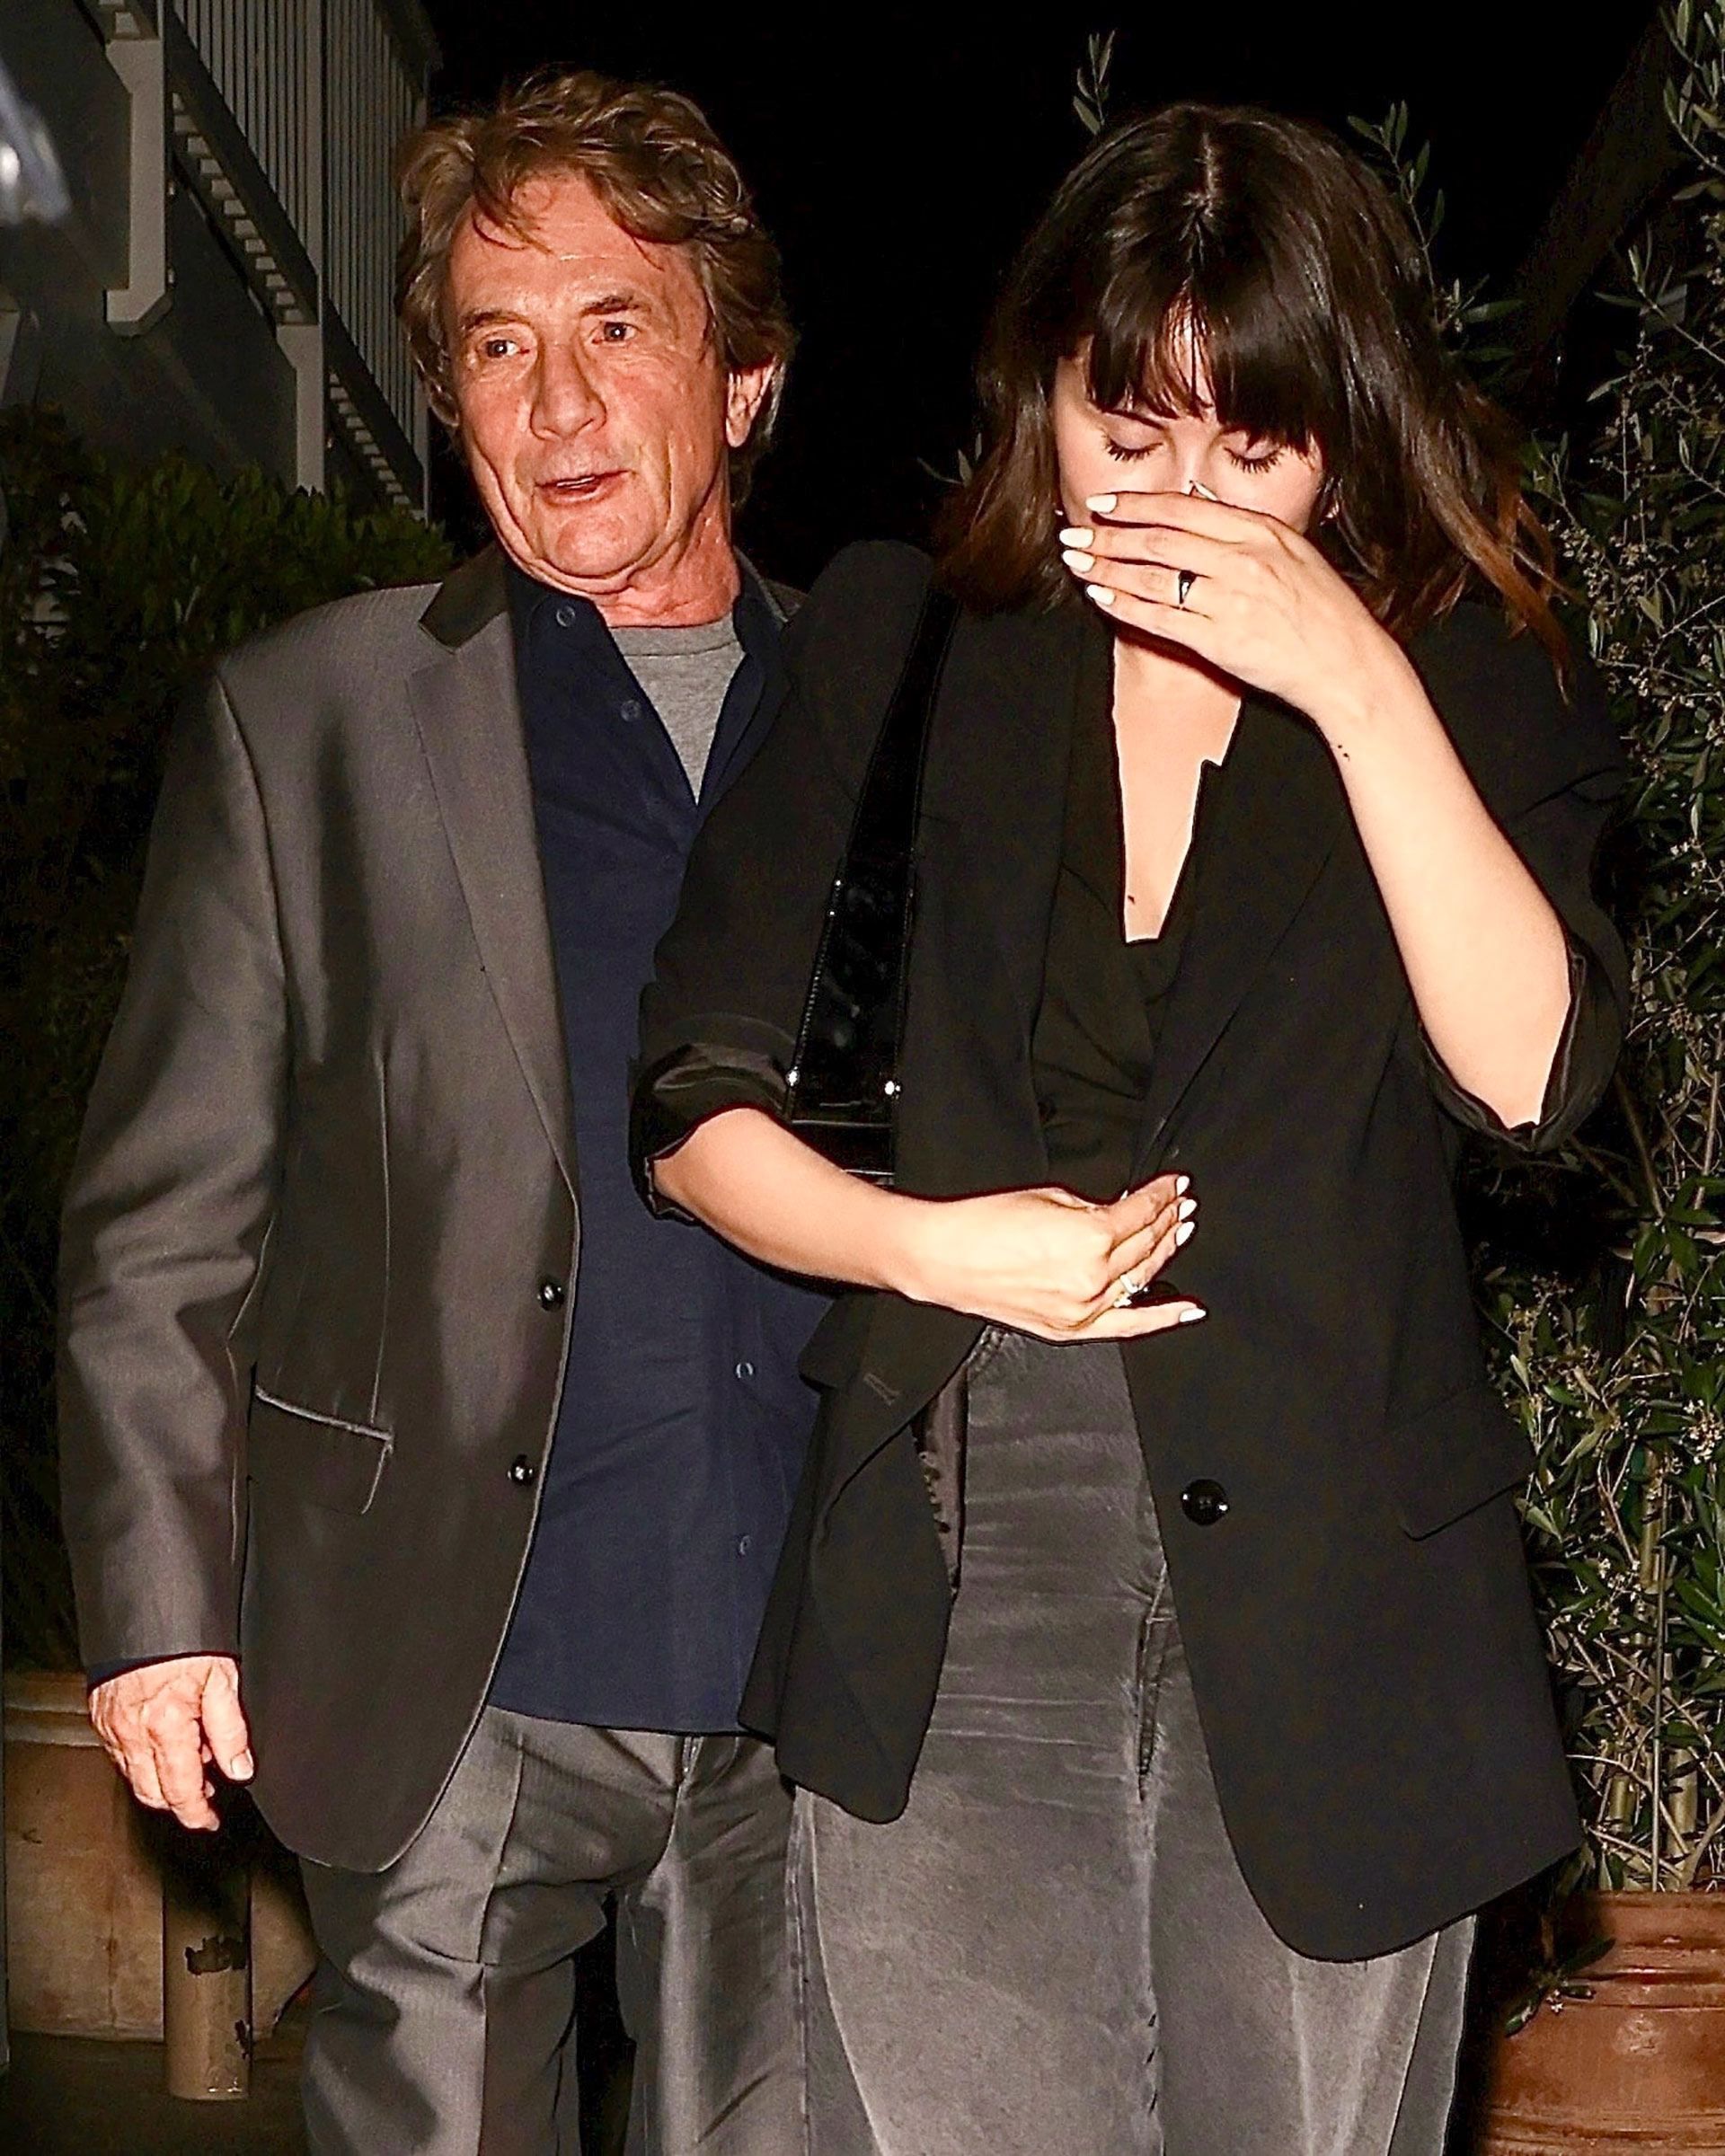 No quiso fotos. Selena Gomez fue a comer con Martin Short a un restaurante de Santa Mónica y cuando vio que había fotógrafos se tapó la cara buscando mantener el bajo perfil. Él, en tanto, no tuvo reparos en que lo fotografíen